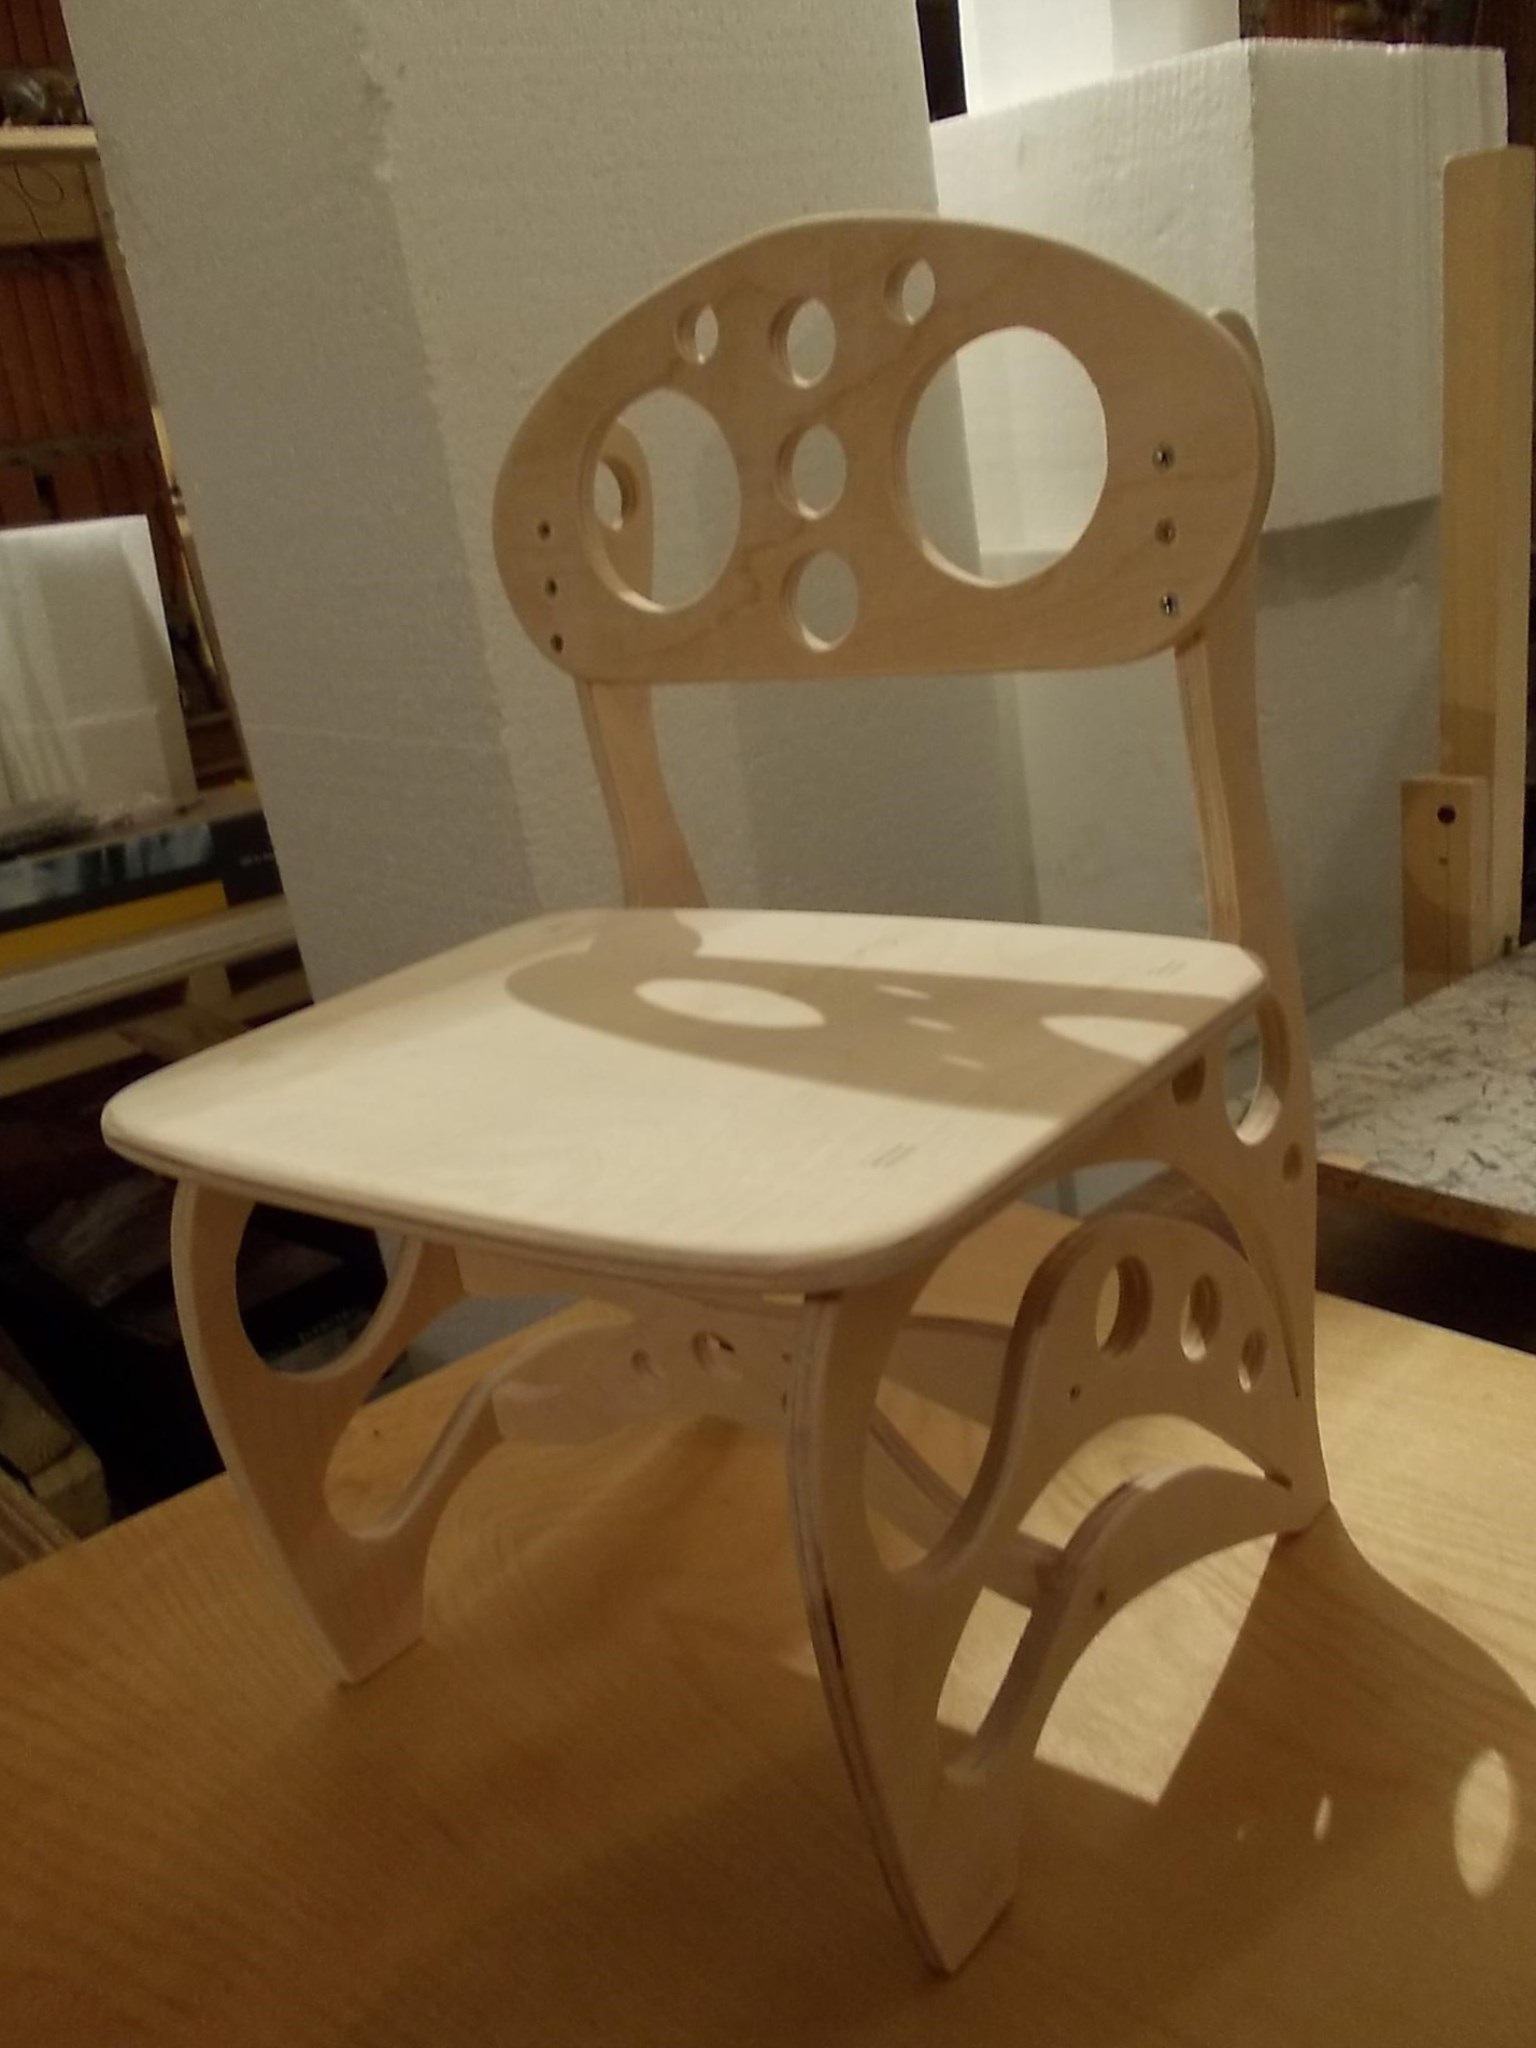 Стол и стулья из фанеры